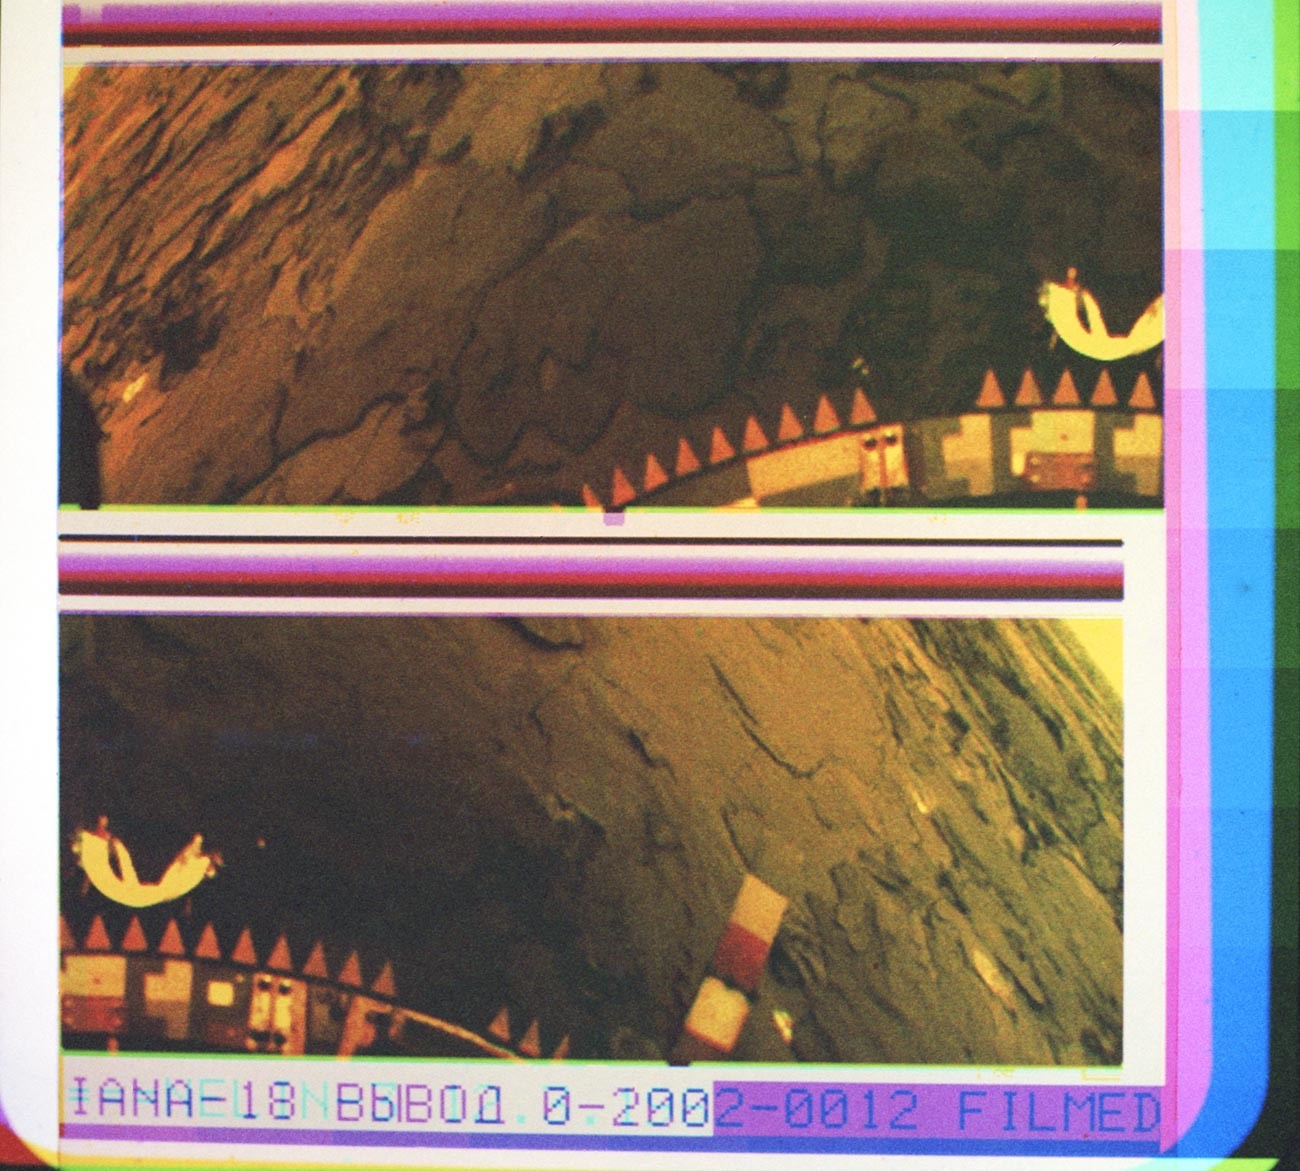 Панорамска колор фотографија површине Венере, послата са сонде „Венера 14“. Добијена је синтезом три снимка емитована кроз колор филтере. Обрада фотографије: Центар за далеку космичку везу и Институт за проблеме емитовања података Академије наука СССР-а. Виде се елементи конструкције сонде.